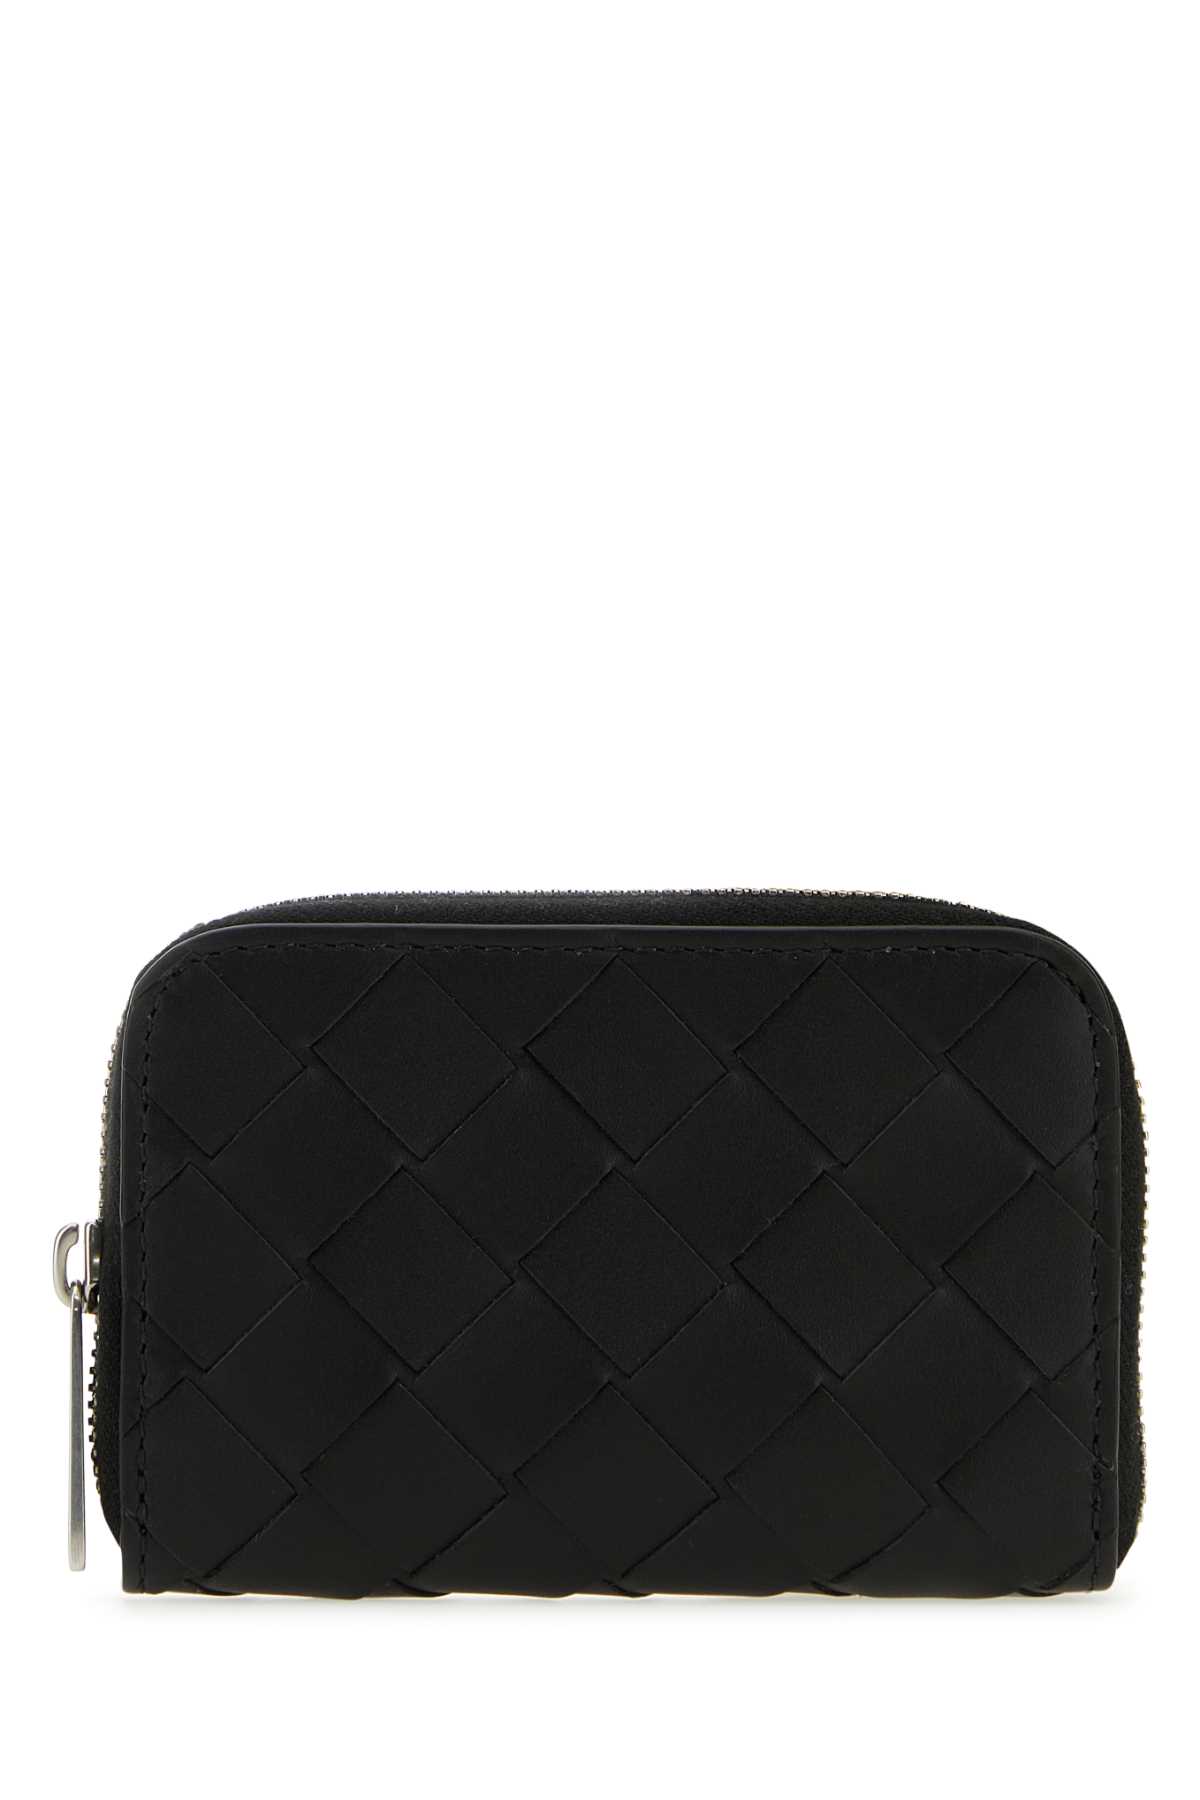 Shop Bottega Veneta Black Leather Wallet In Blacksilver